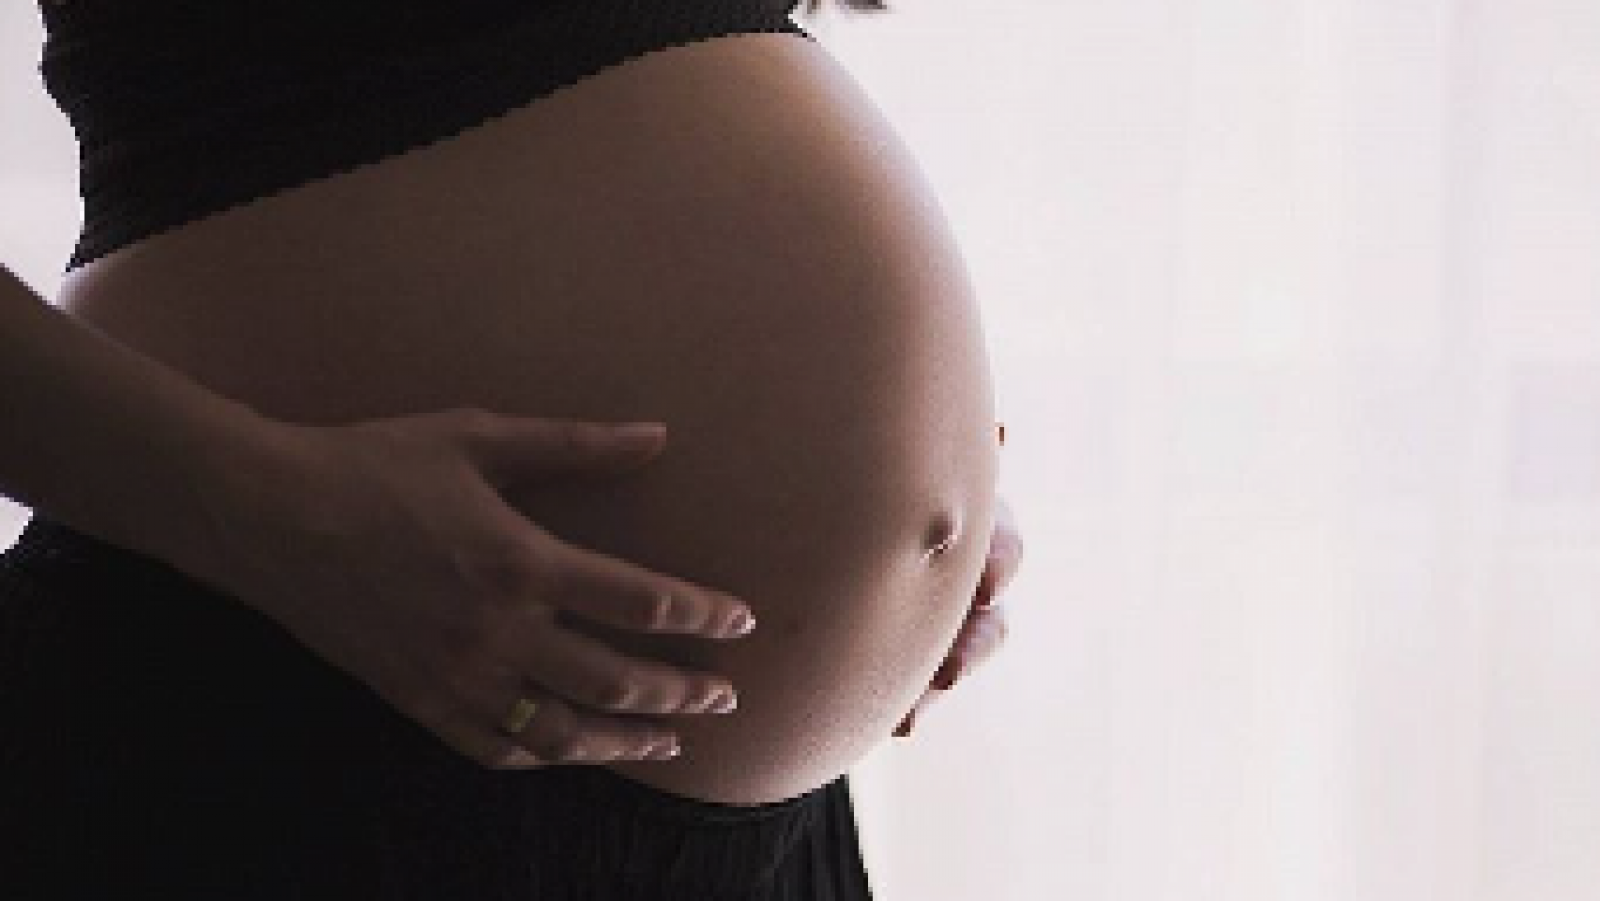 Mujer embarazada sostiene su vientre